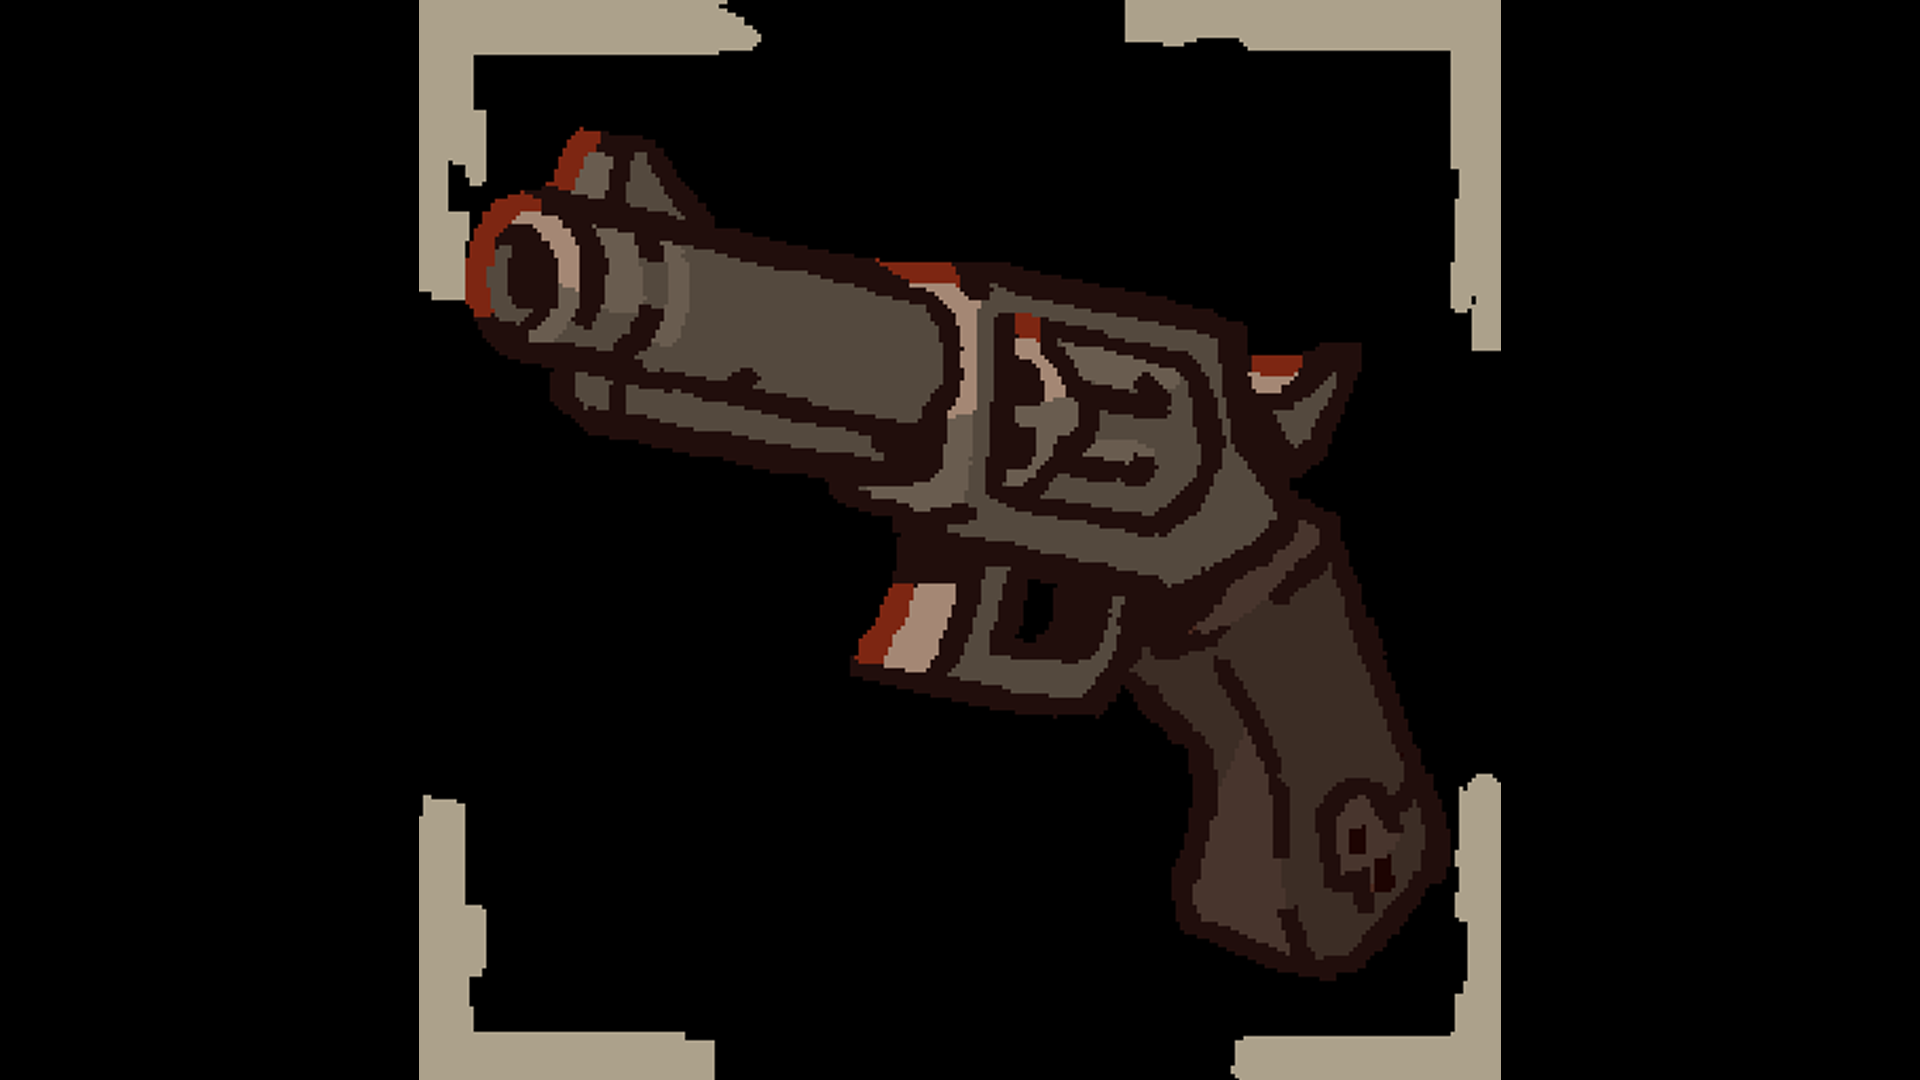 Icon for Revolver